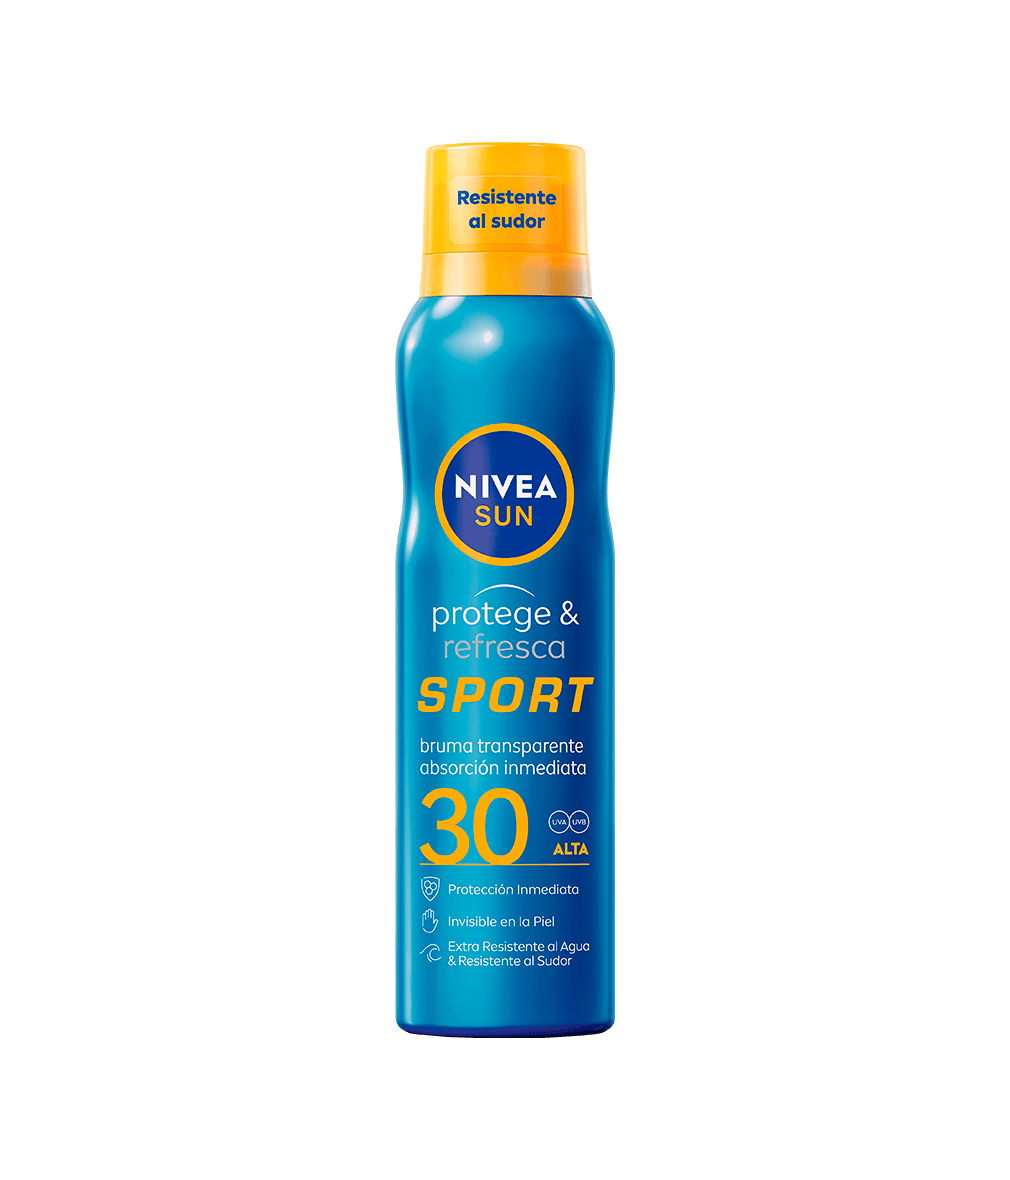 NIVEA SUN Protege y Refresca Spray Bruma Sport FP30